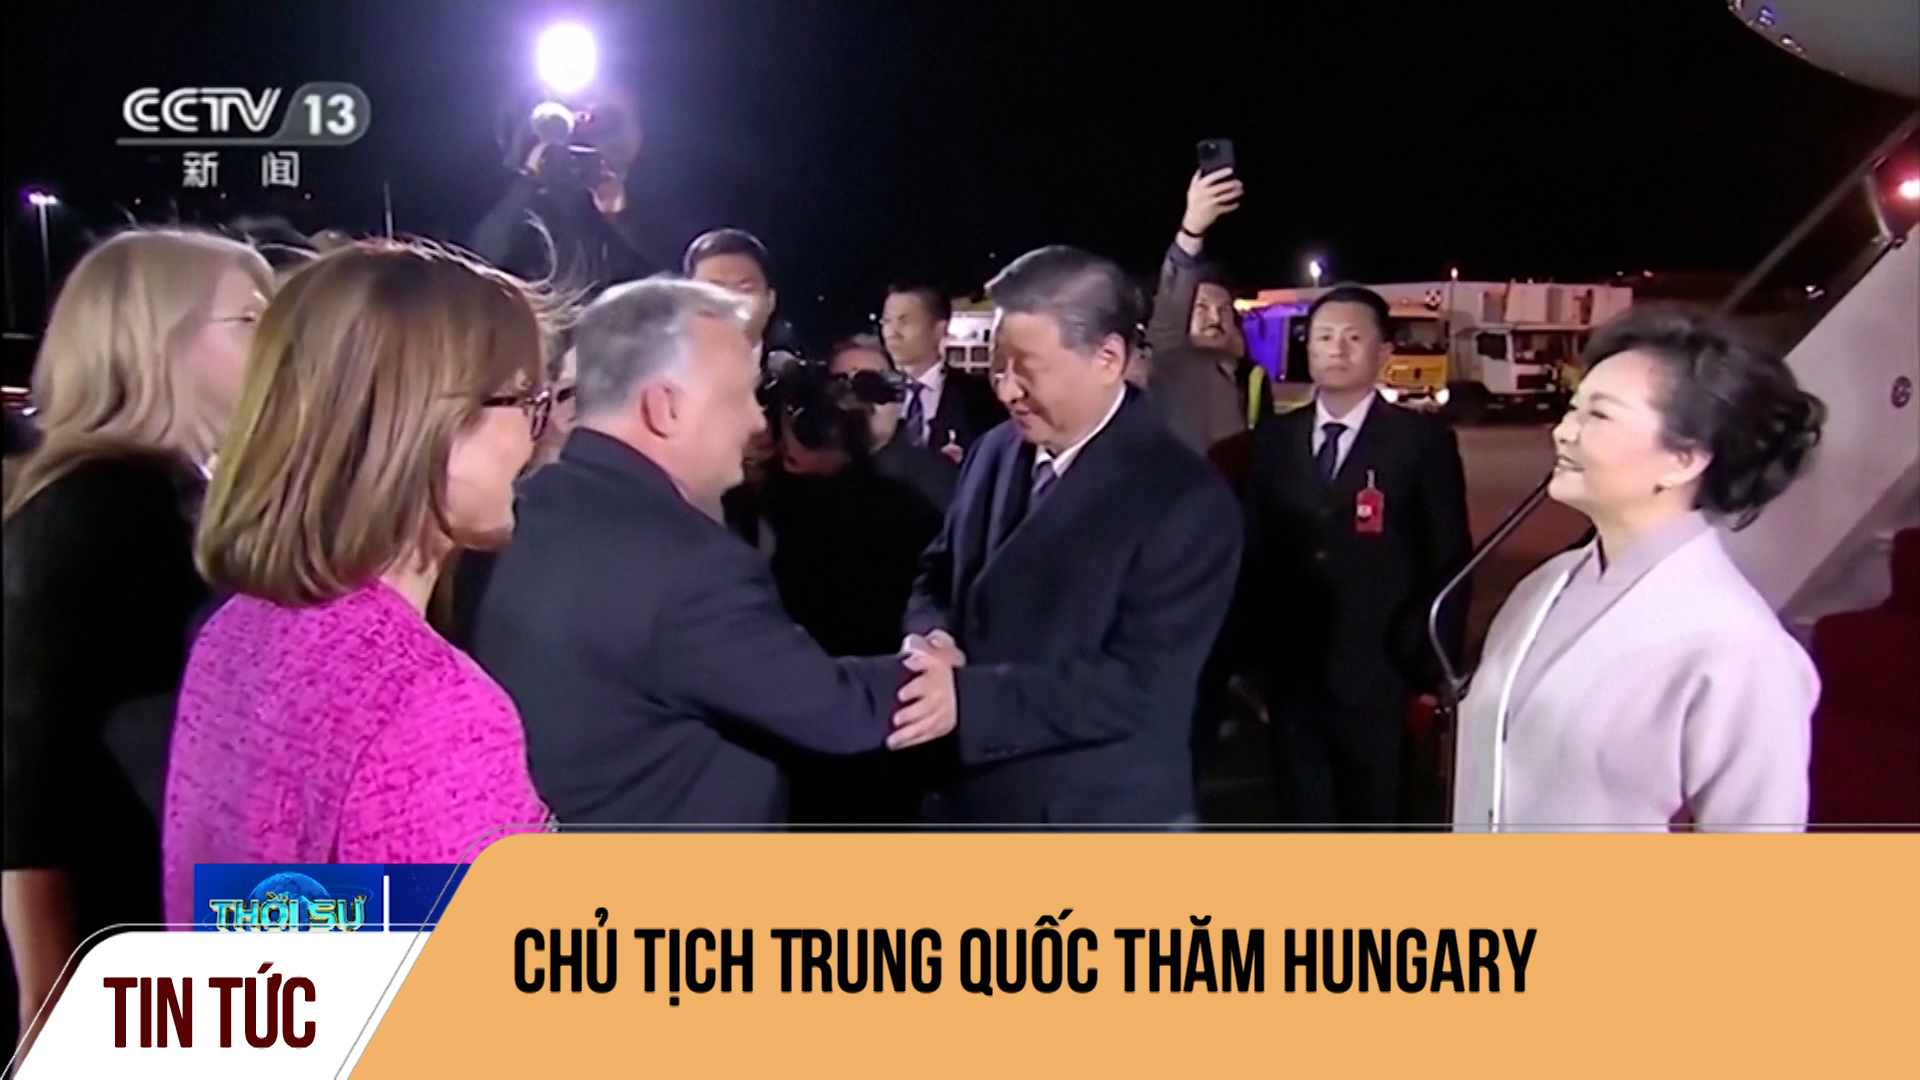 Chủ tịch Trung Quốc thăm Hungary